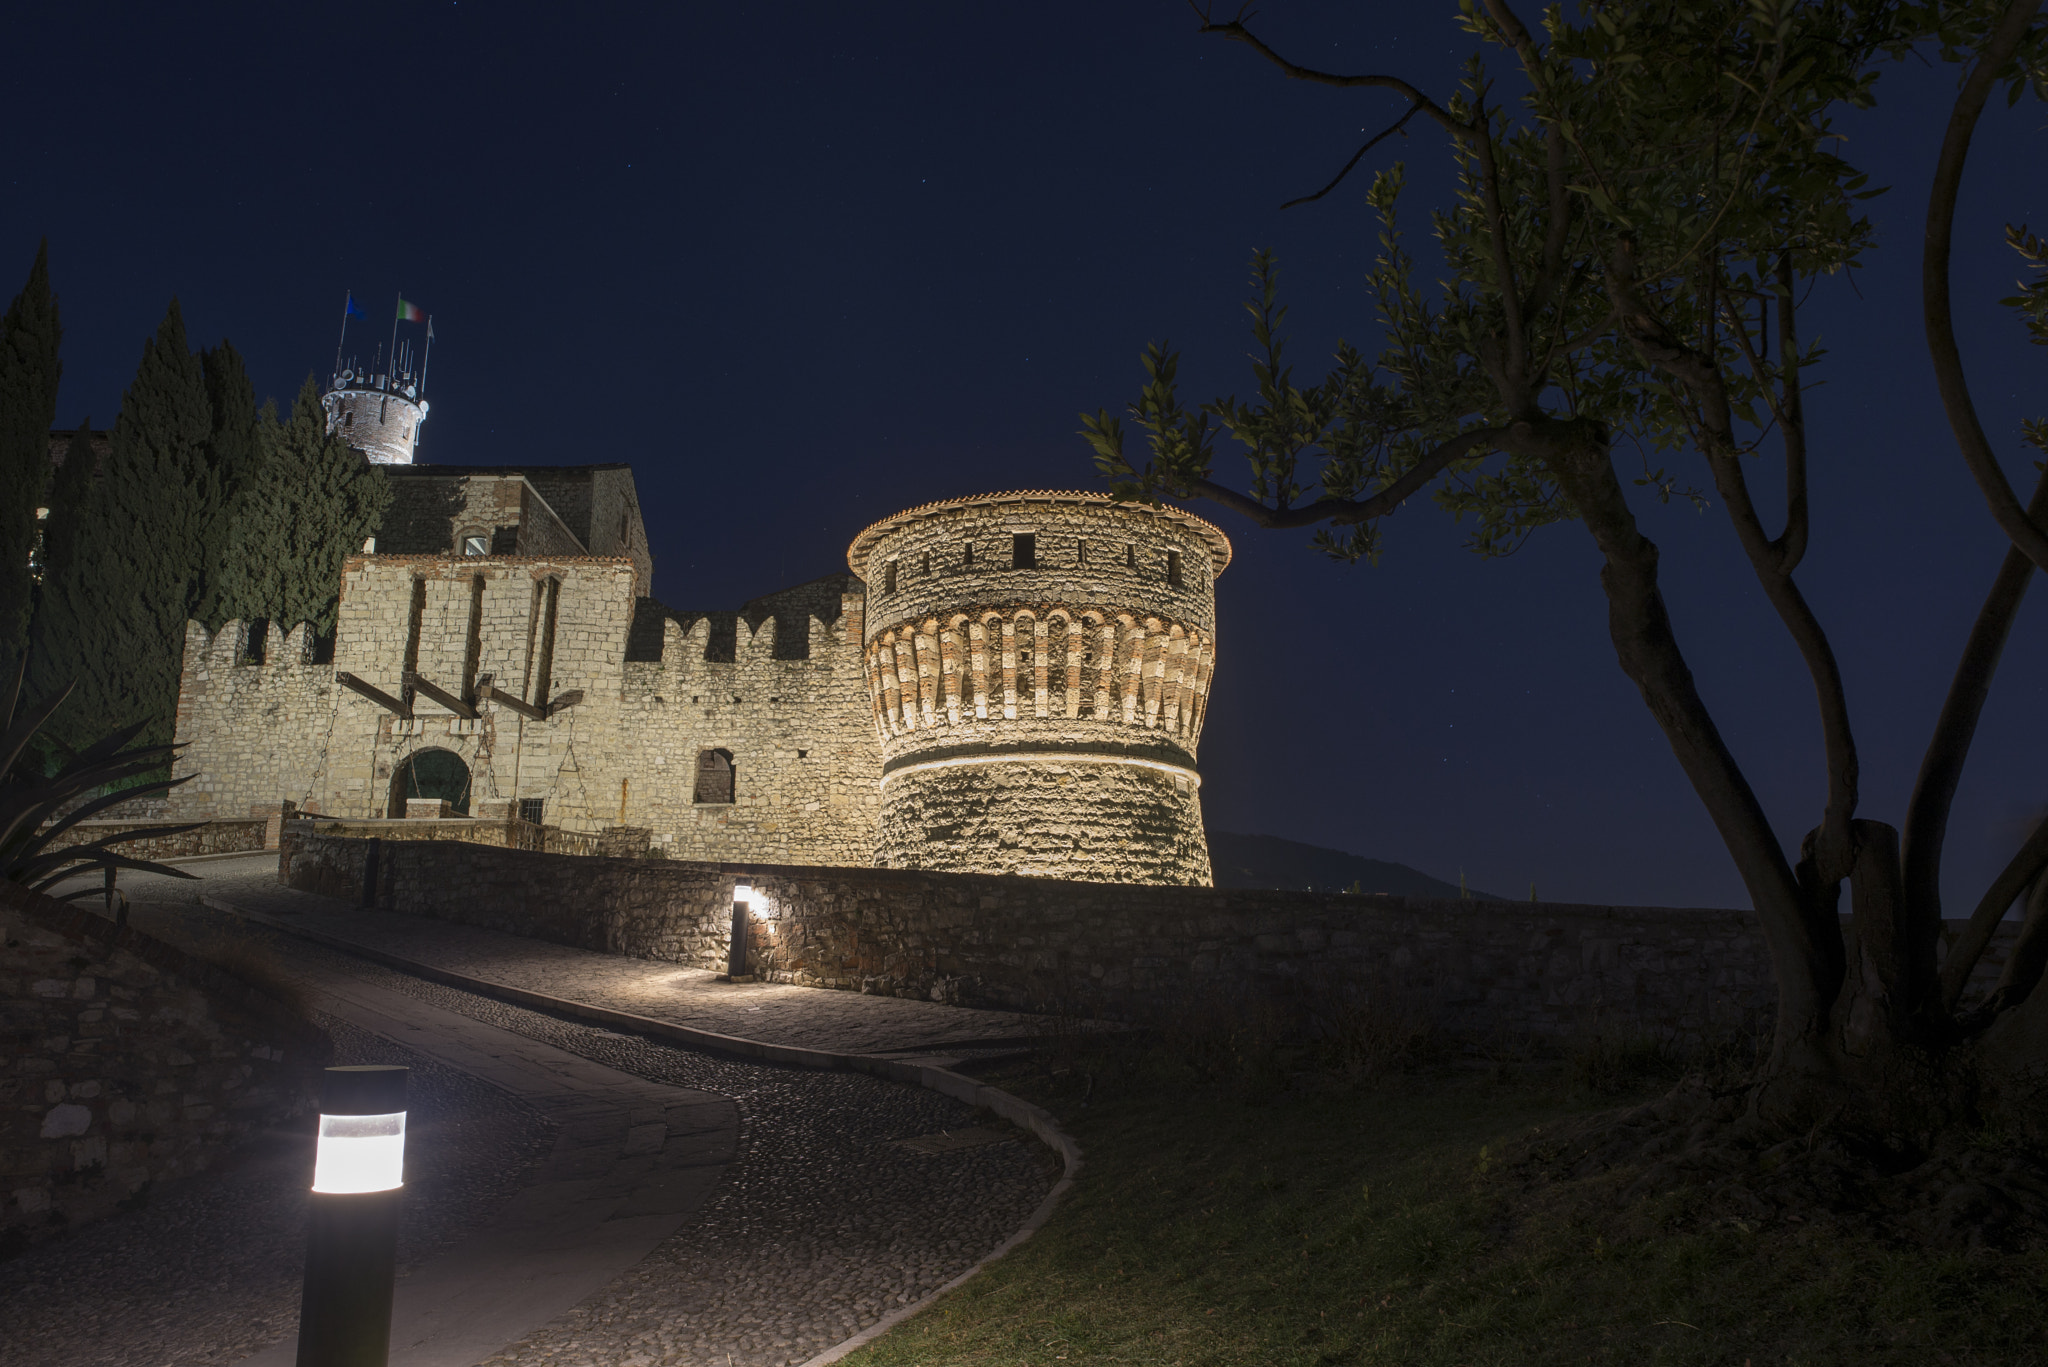 Nikon D600 sample photo. Il castello di brescia di notte photography